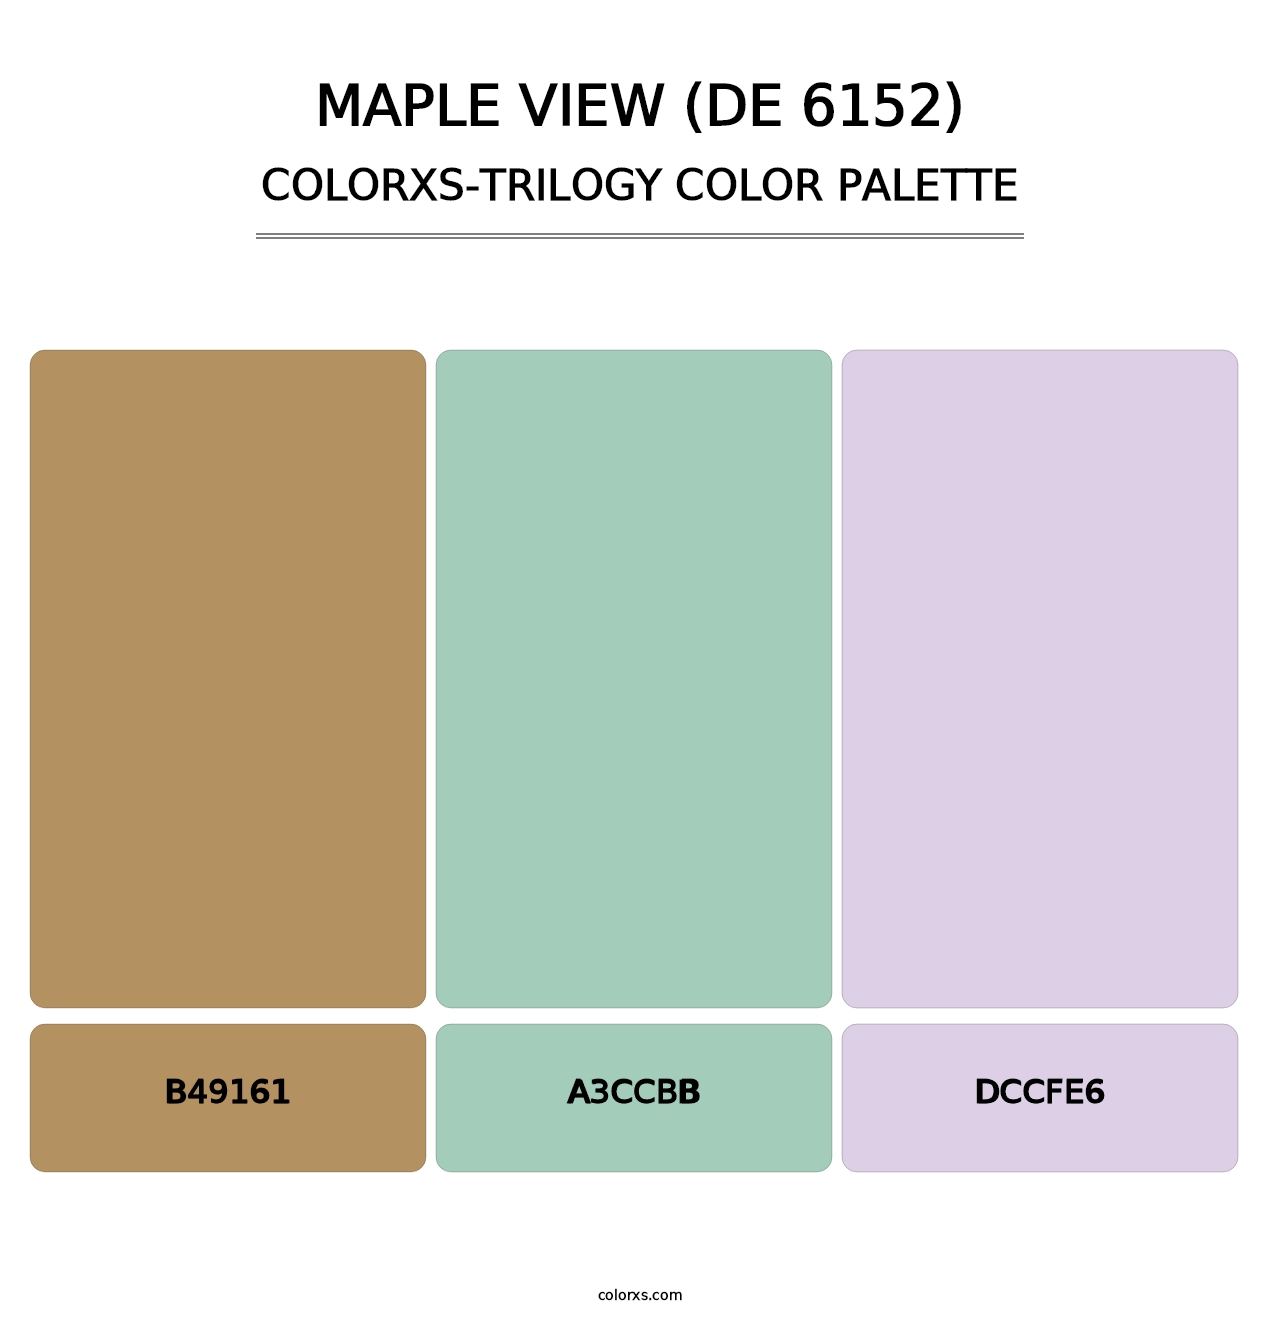 Maple View (DE 6152) - Colorxs Trilogy Palette